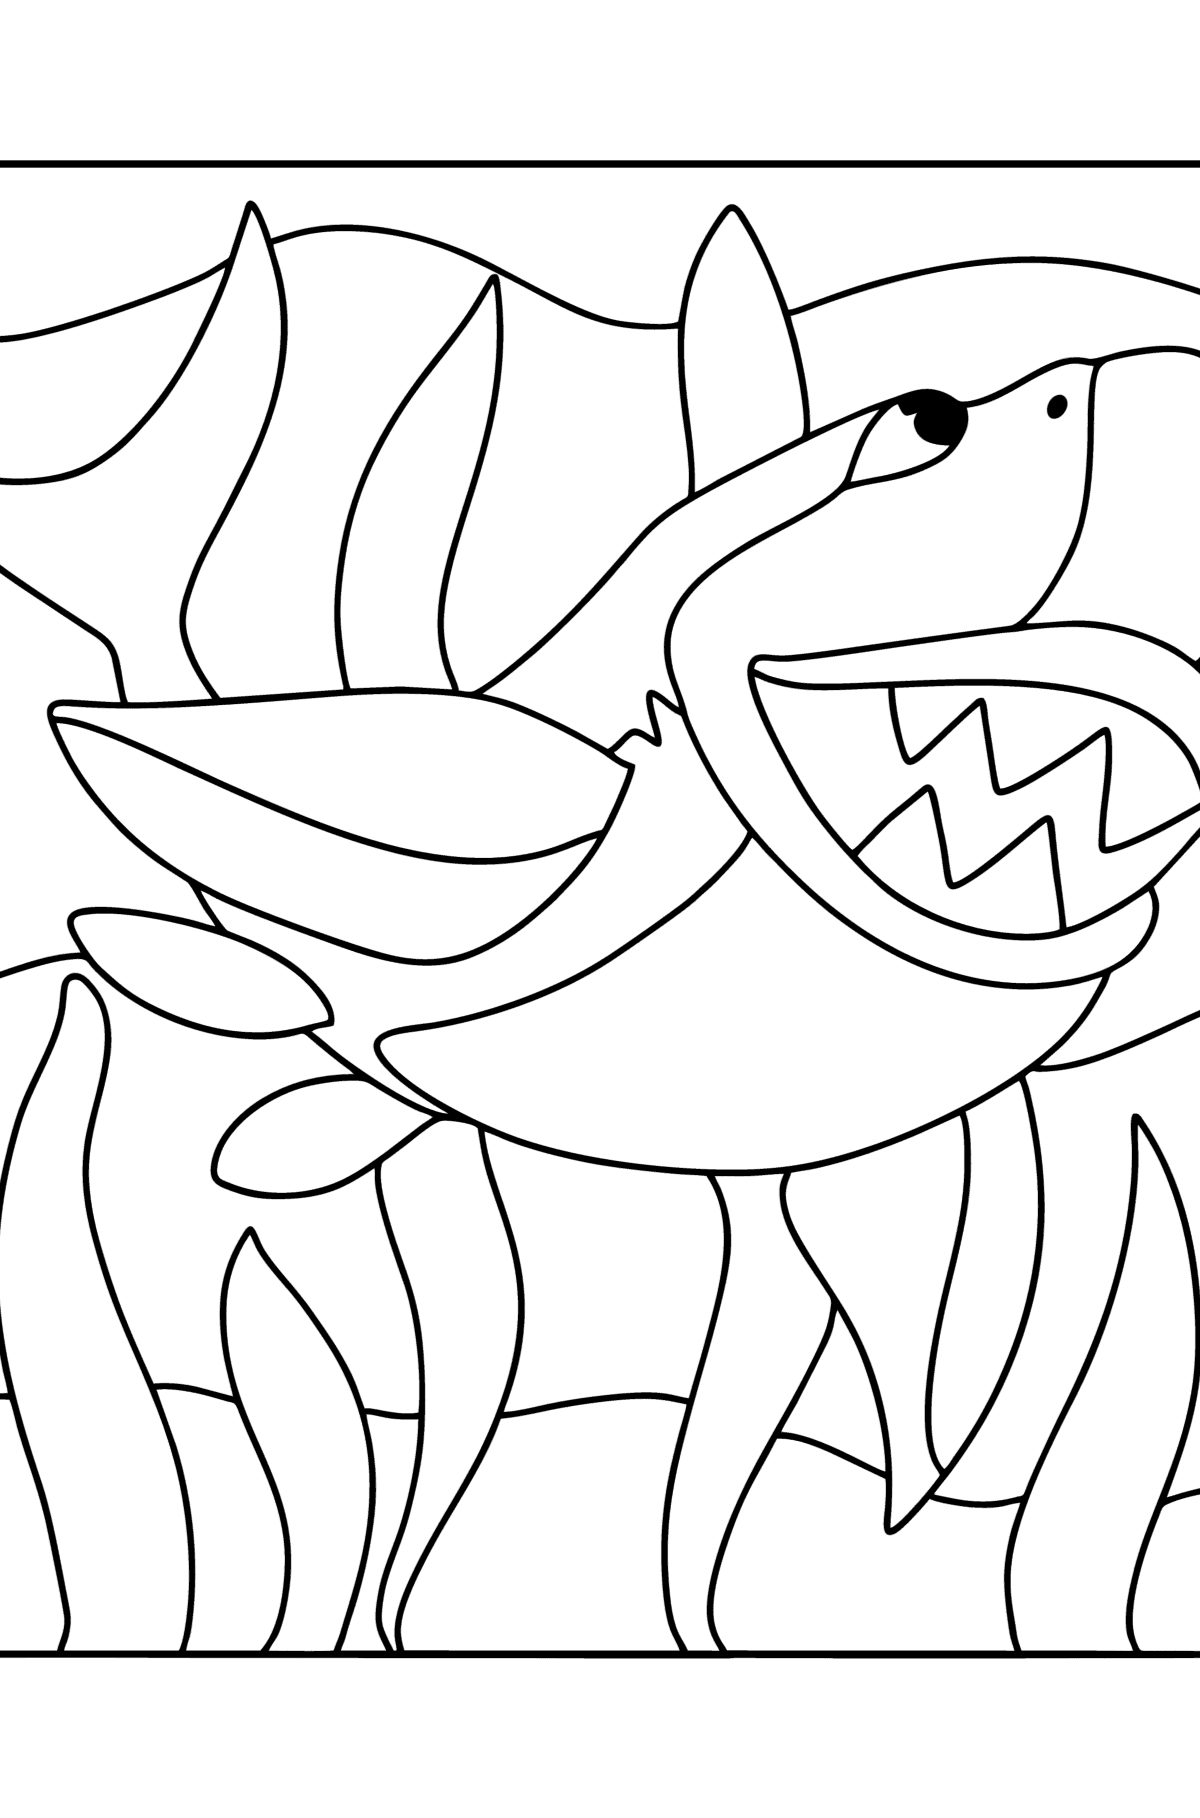 Раскраска Акула - Картинки для Детей